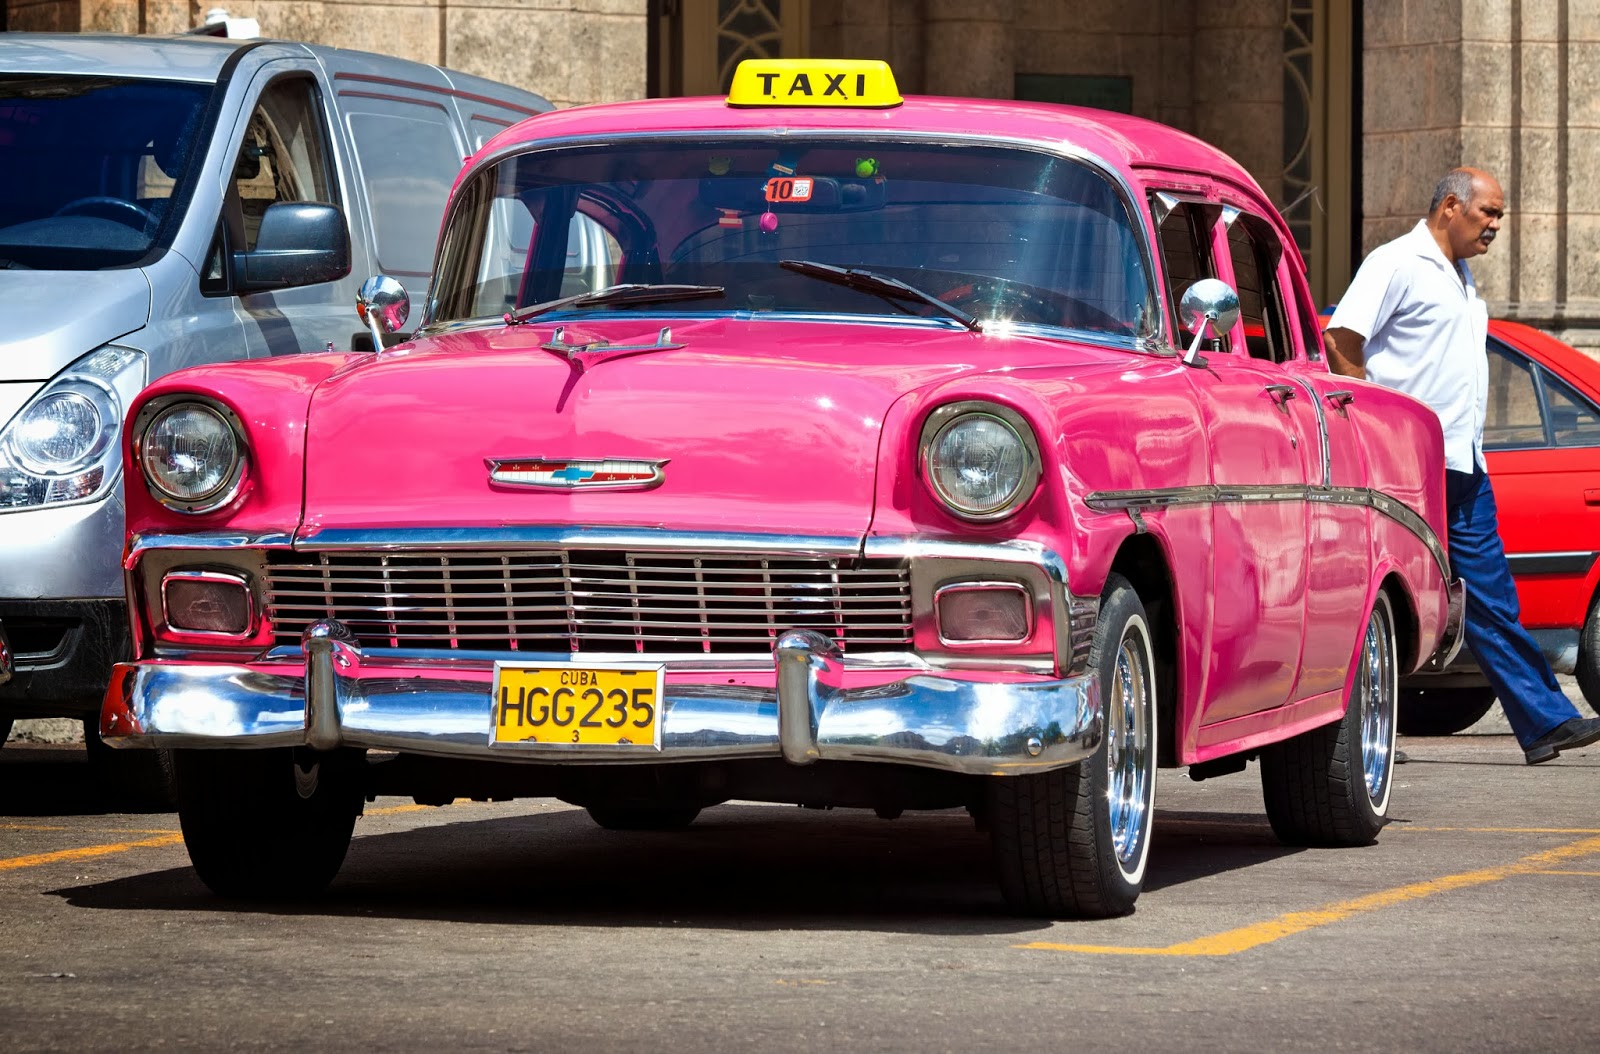 © Automotiveblogz: Back Cars in Cuba Photos